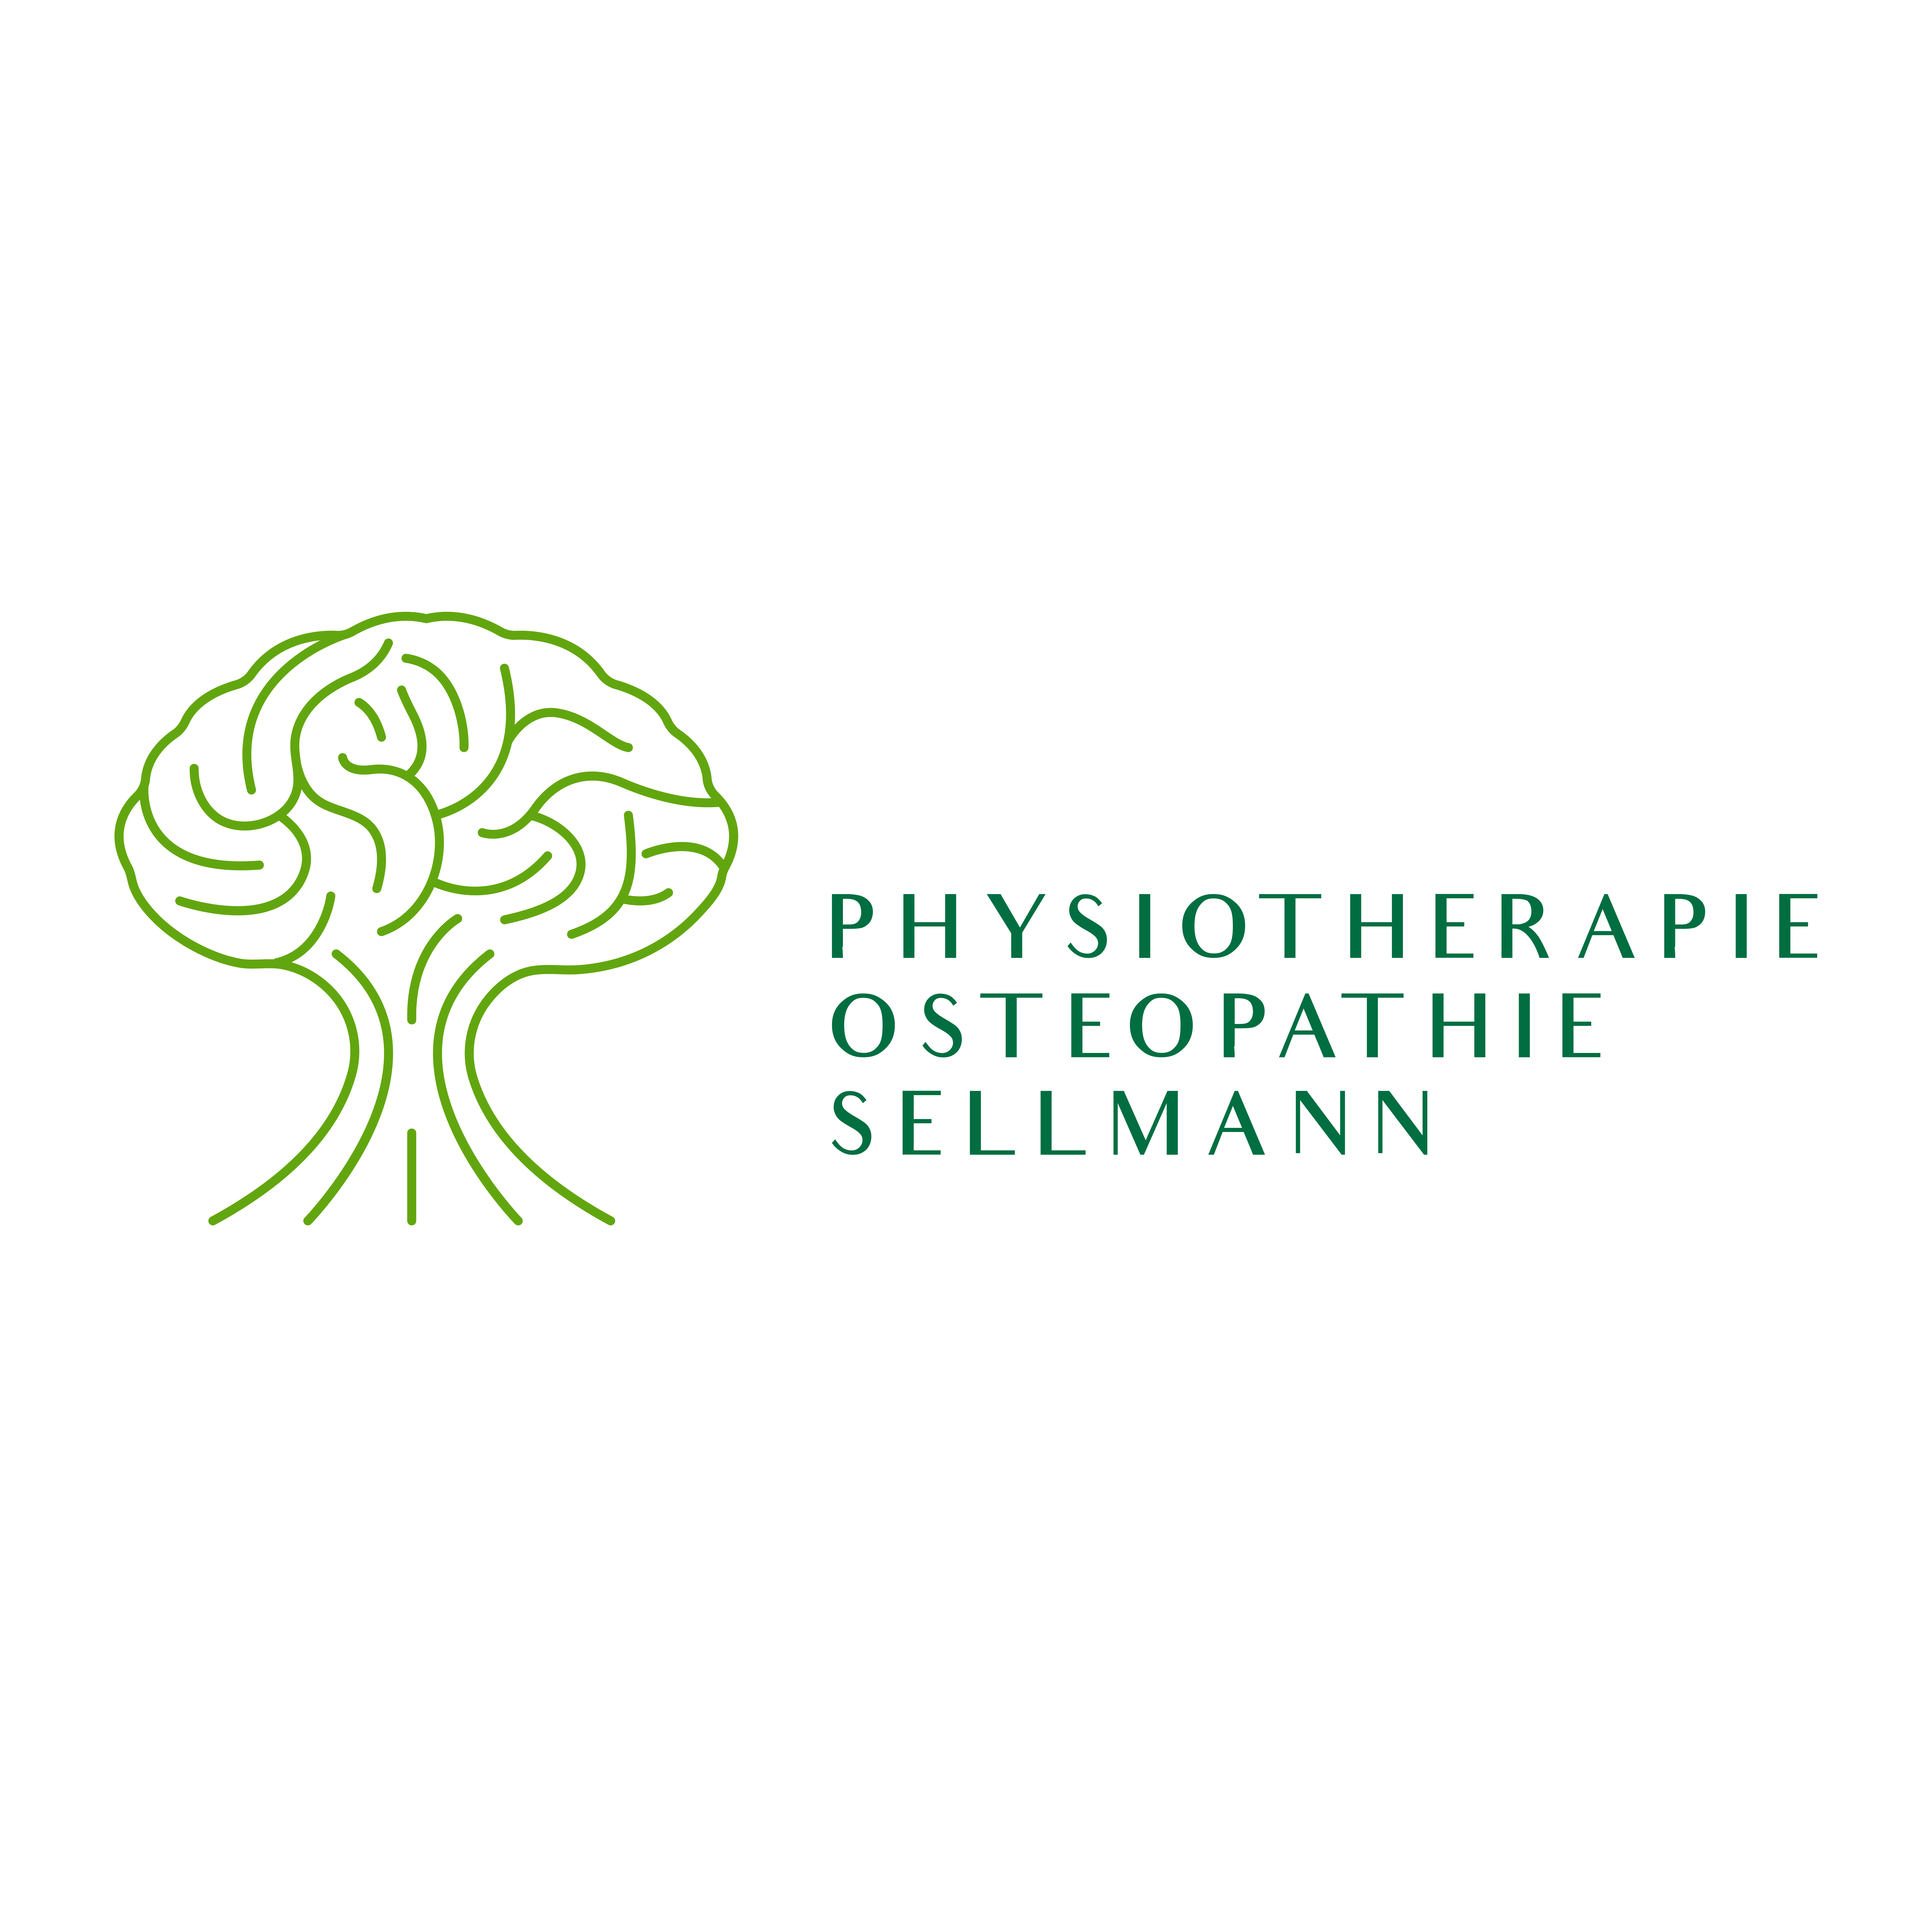 Physiotherapie & Osteopathie Sellmann Logo